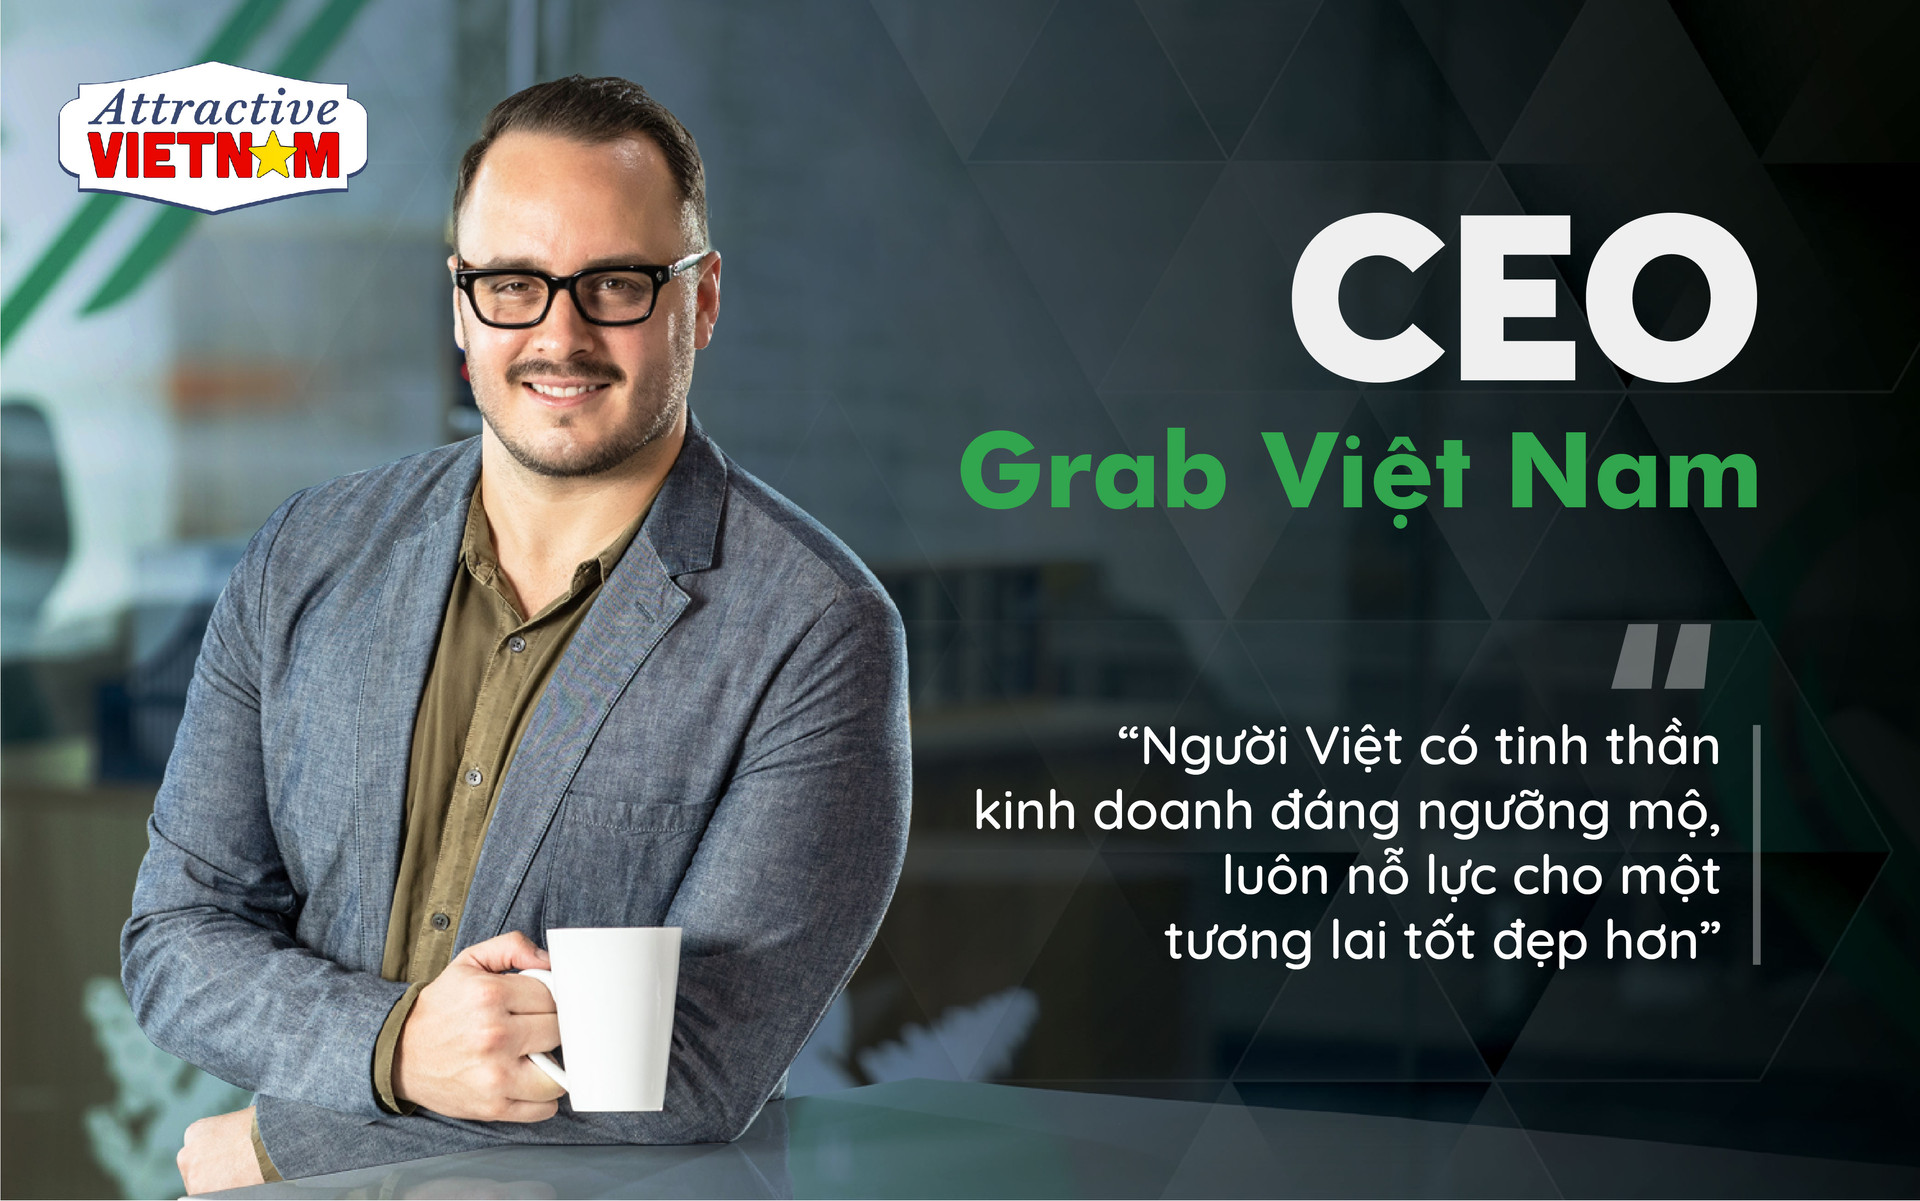 CEO Grab Việt Nam nhìn ra điểm đặc biệt từ những quầy hàng trên vỉa hè, gian hàng trong ngõ nhỏ: Tinh thần kinh doanh của người Việt rất đáng ngưỡng mộ - Ảnh 1.